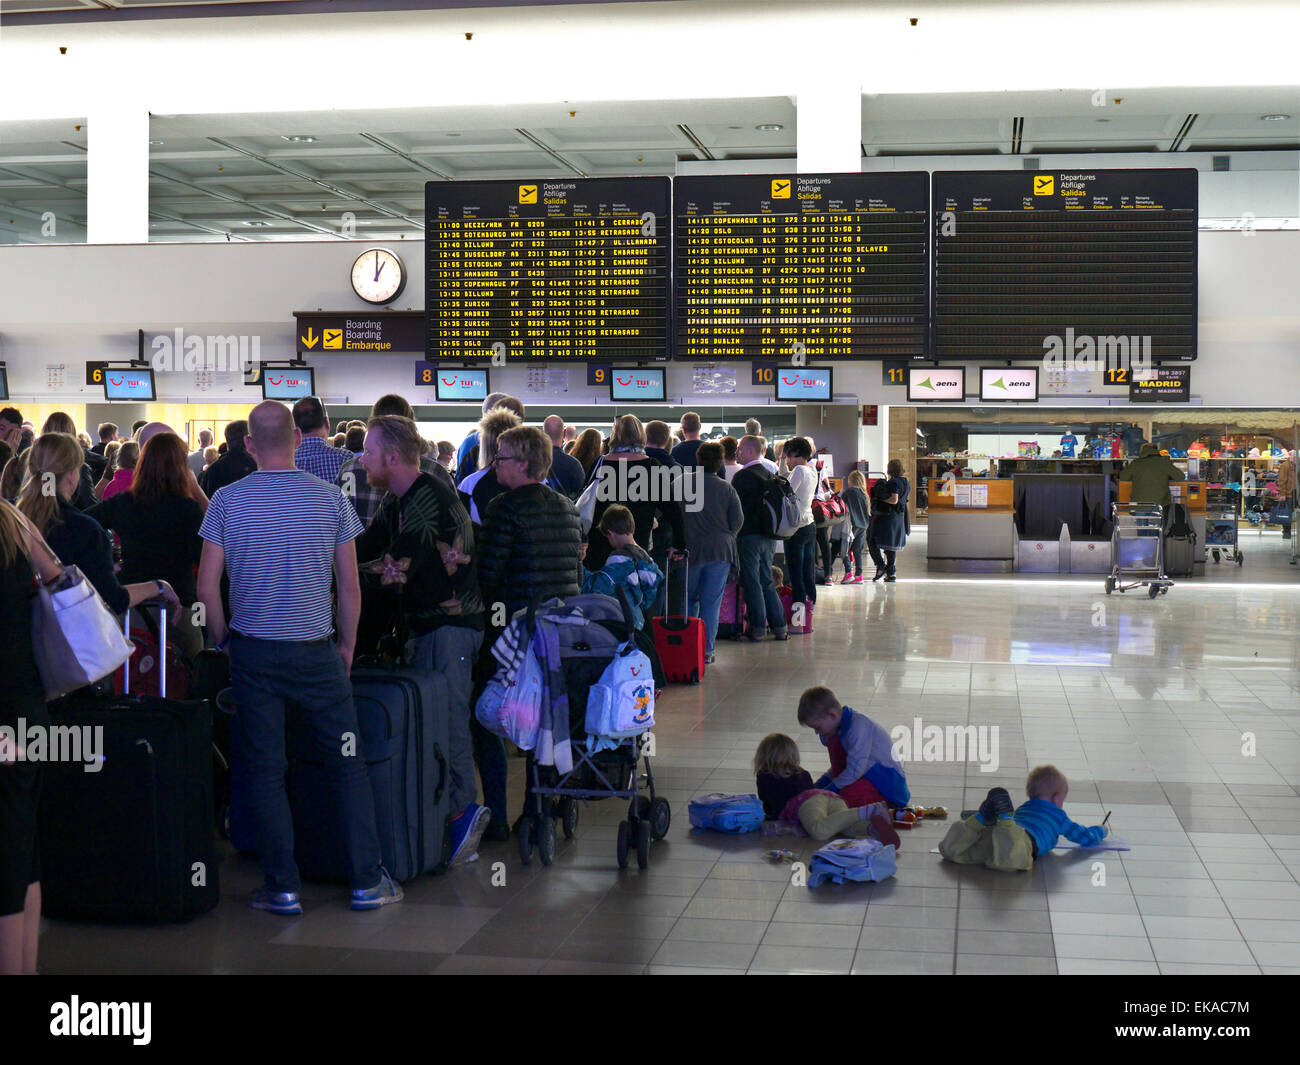 FILES D'ATTENTE À L'AÉROPORT LES PASSAGERS RETARDENT les files d'attente des vols charter TUI et les bagages attendent au terminal de l'aéroport pour s'enregistrer sur leur vol Banque D'Images